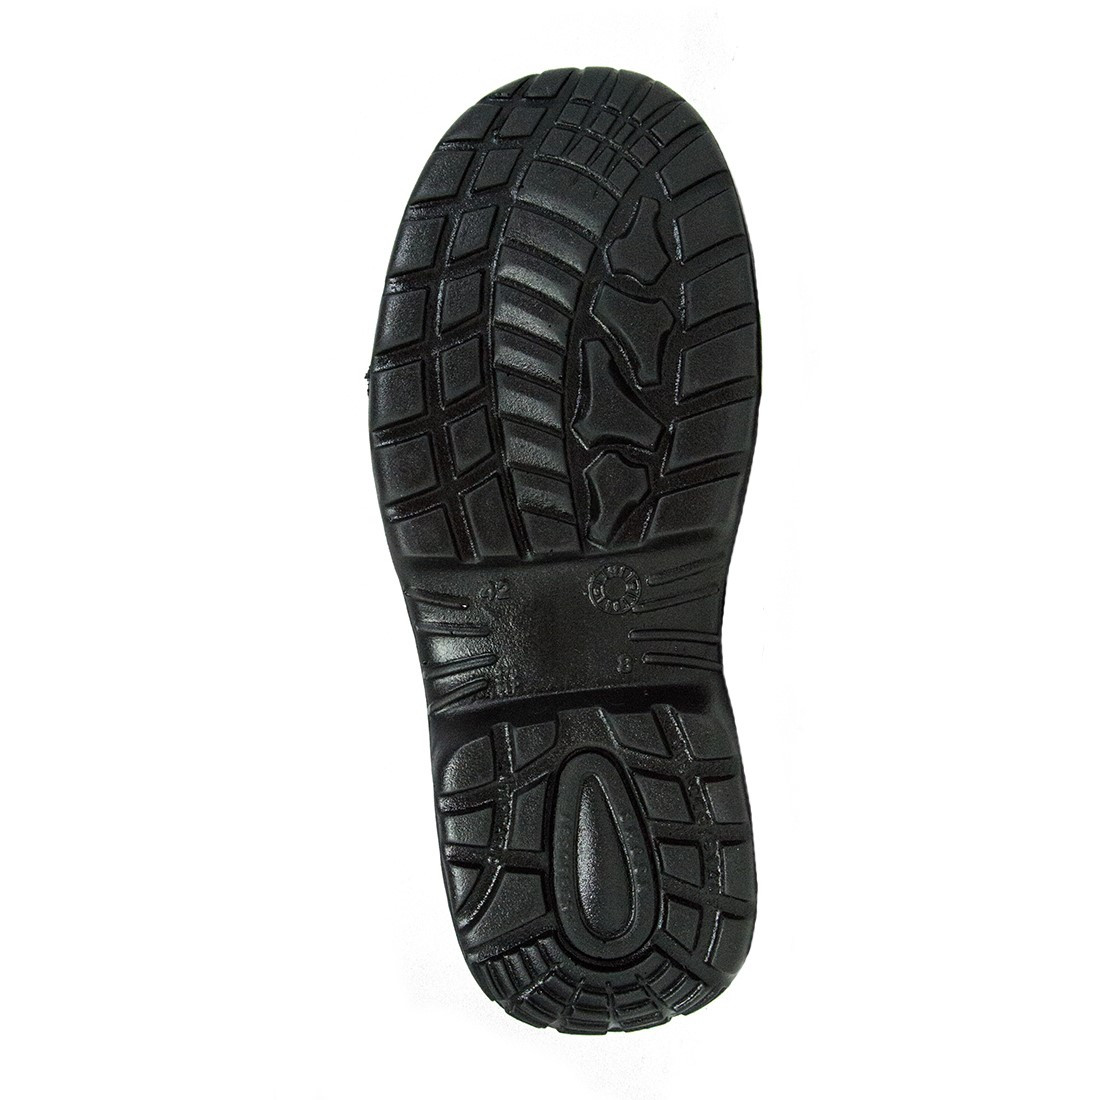 Prado Boot S3 SRC - Les chaussures de protection